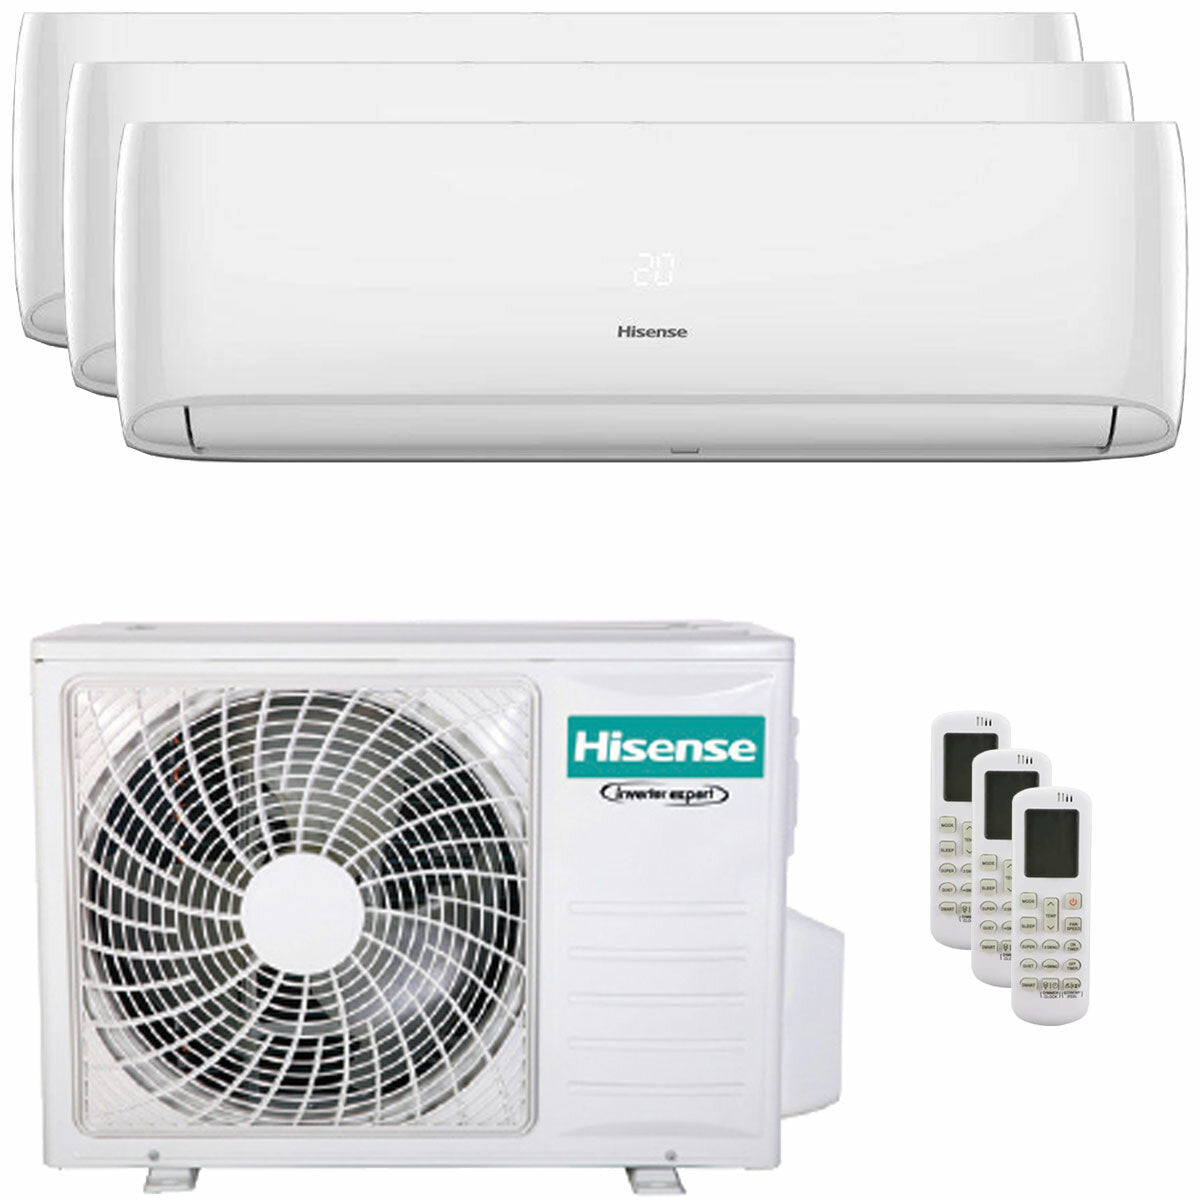 Hisense Hi-Comfort Trial Split Klimaanlage 9000+12000+12000 BTU Inverter A++ WLAN Außengerät 7,0 kW